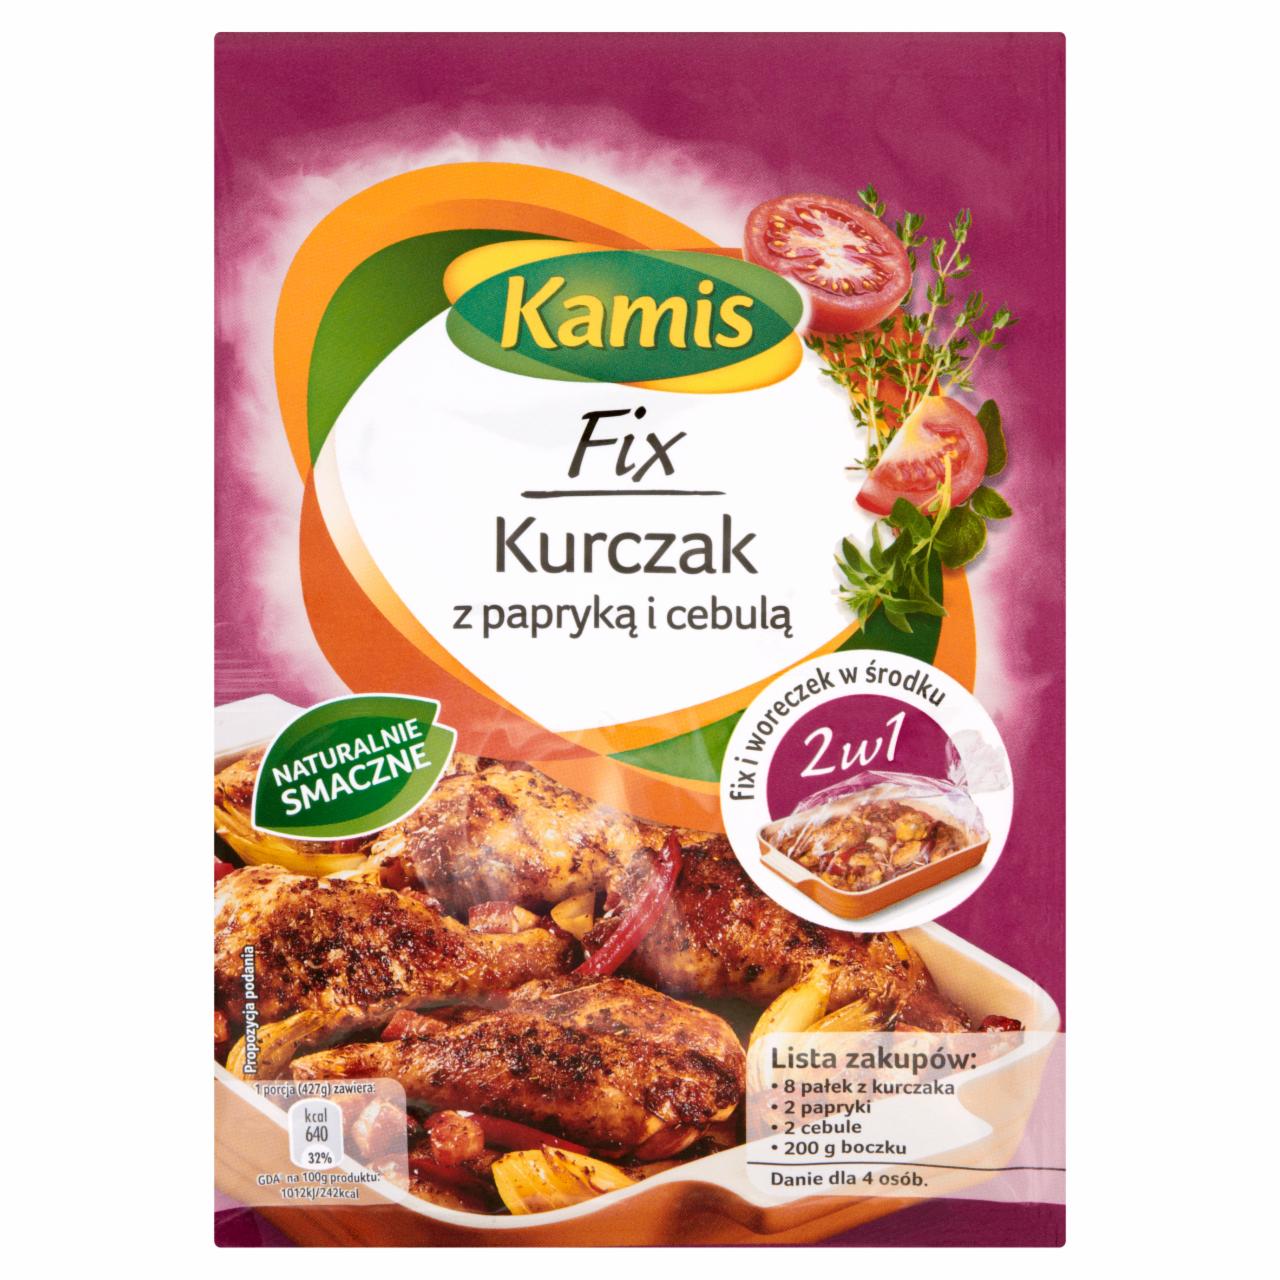 Zdjęcia - Kamis Fix Kurczak z papryką i cebulą 15 g